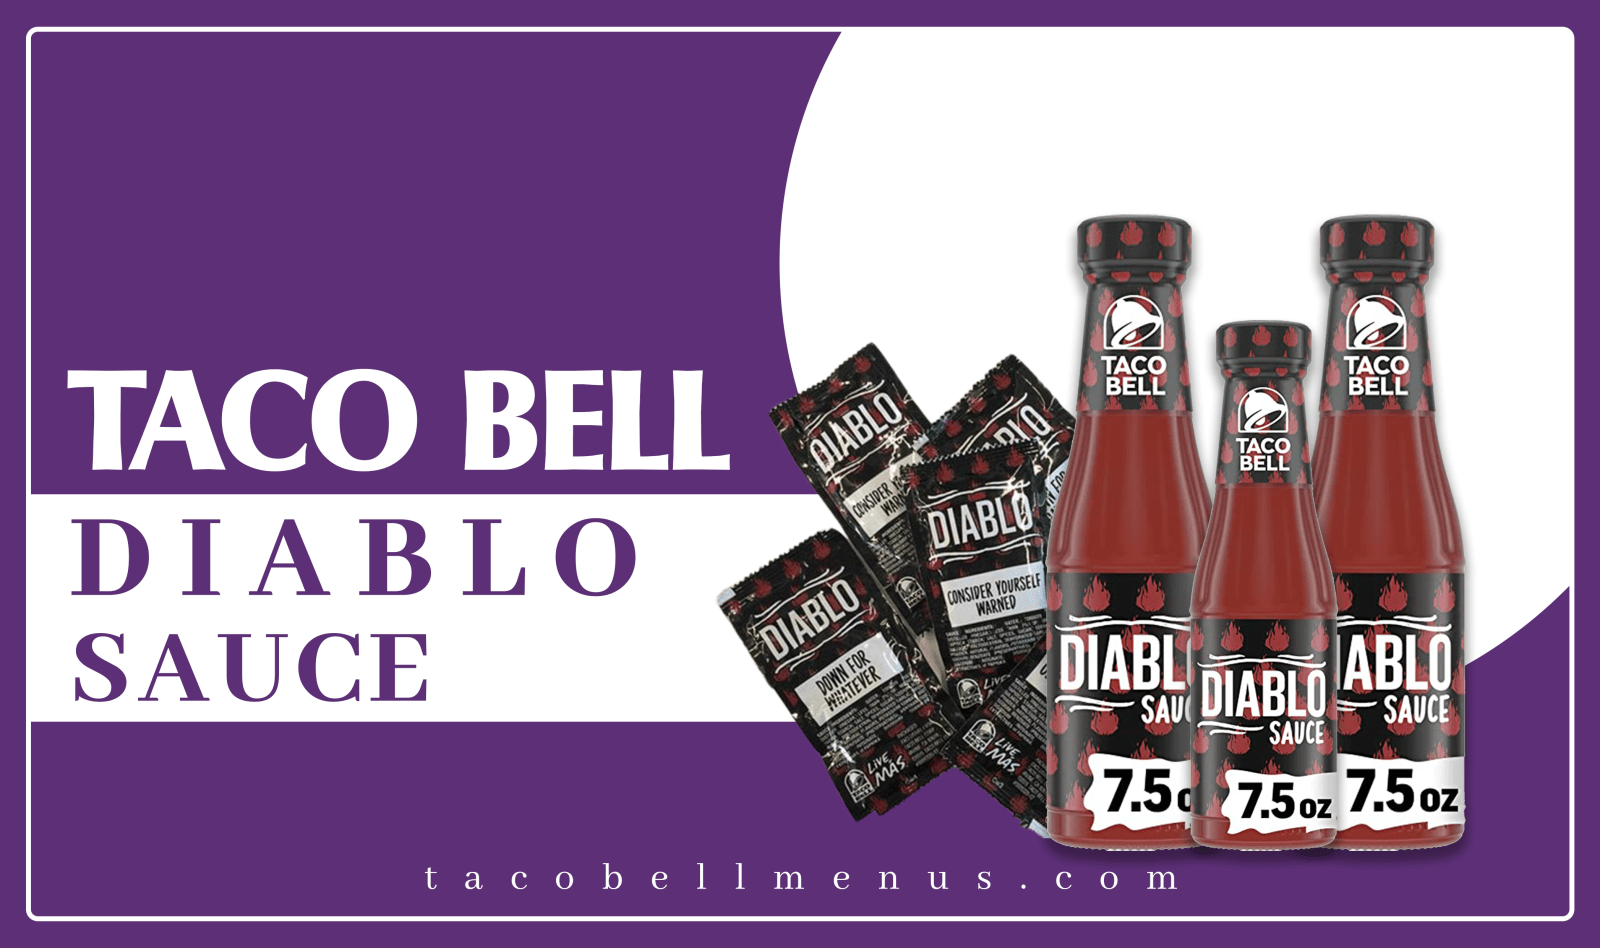 Taco Bell Diablo Sauce, Taco Bell Diablo Sauce Recipe, Taco Bell Diablo Sauce Bottle, Nutrition, Taco Bell Diablo Sauce Packet, Price